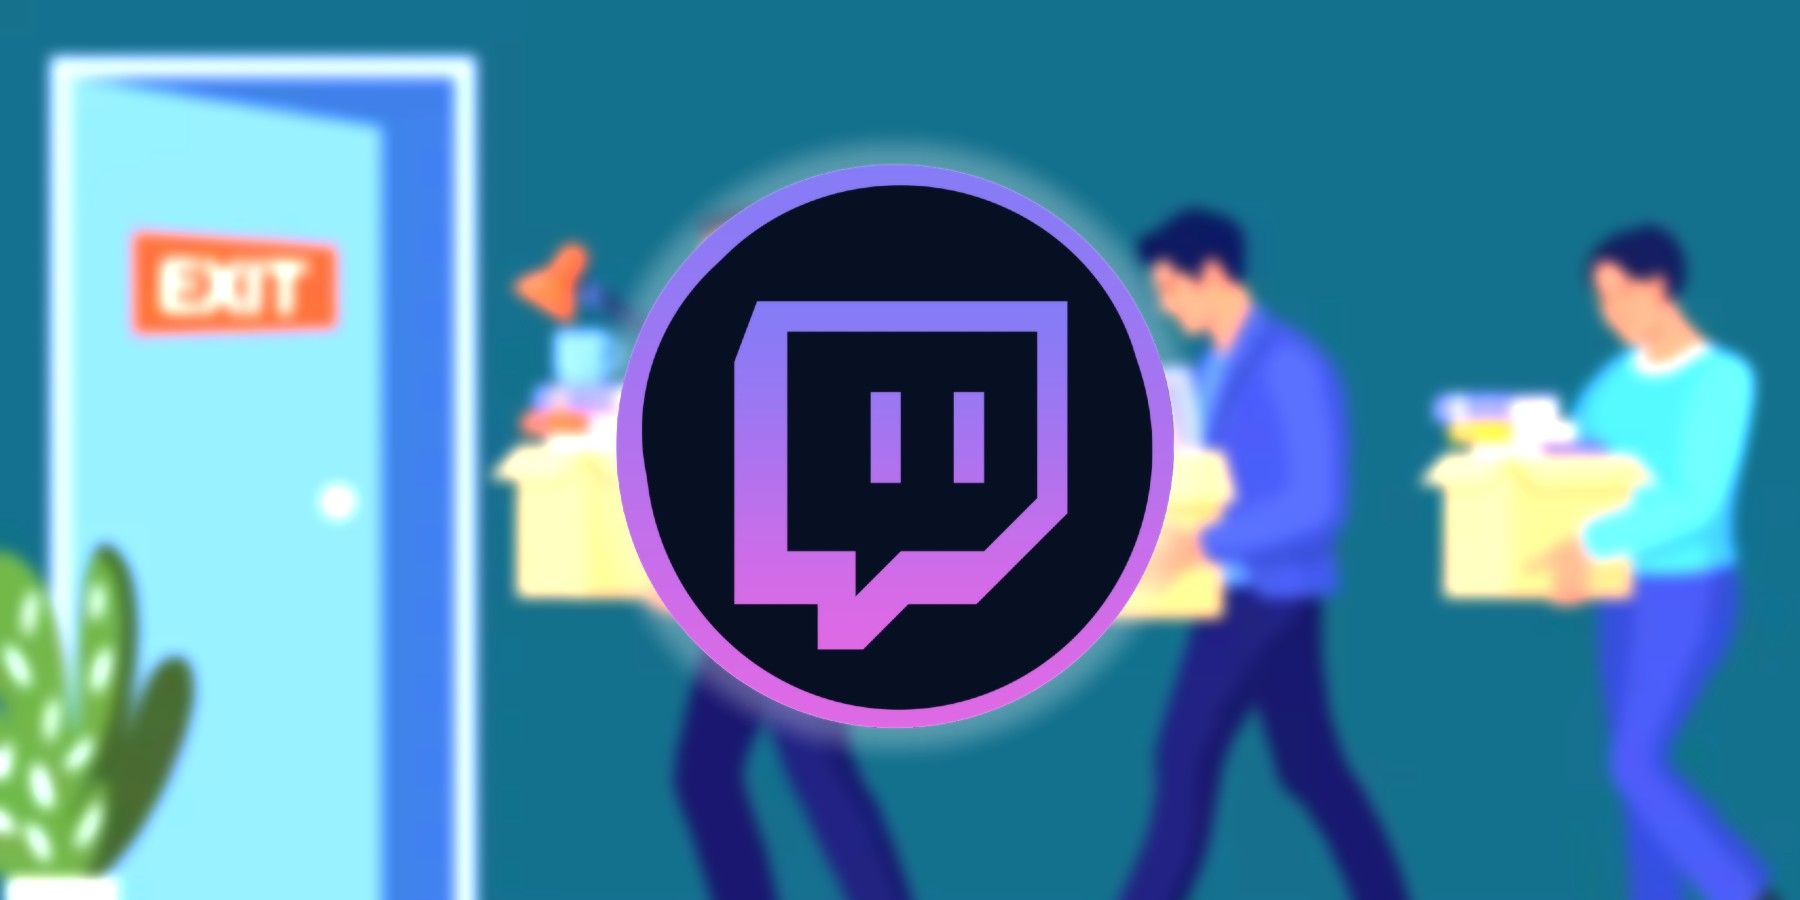 twitch-logo-layoffs-blurred-background